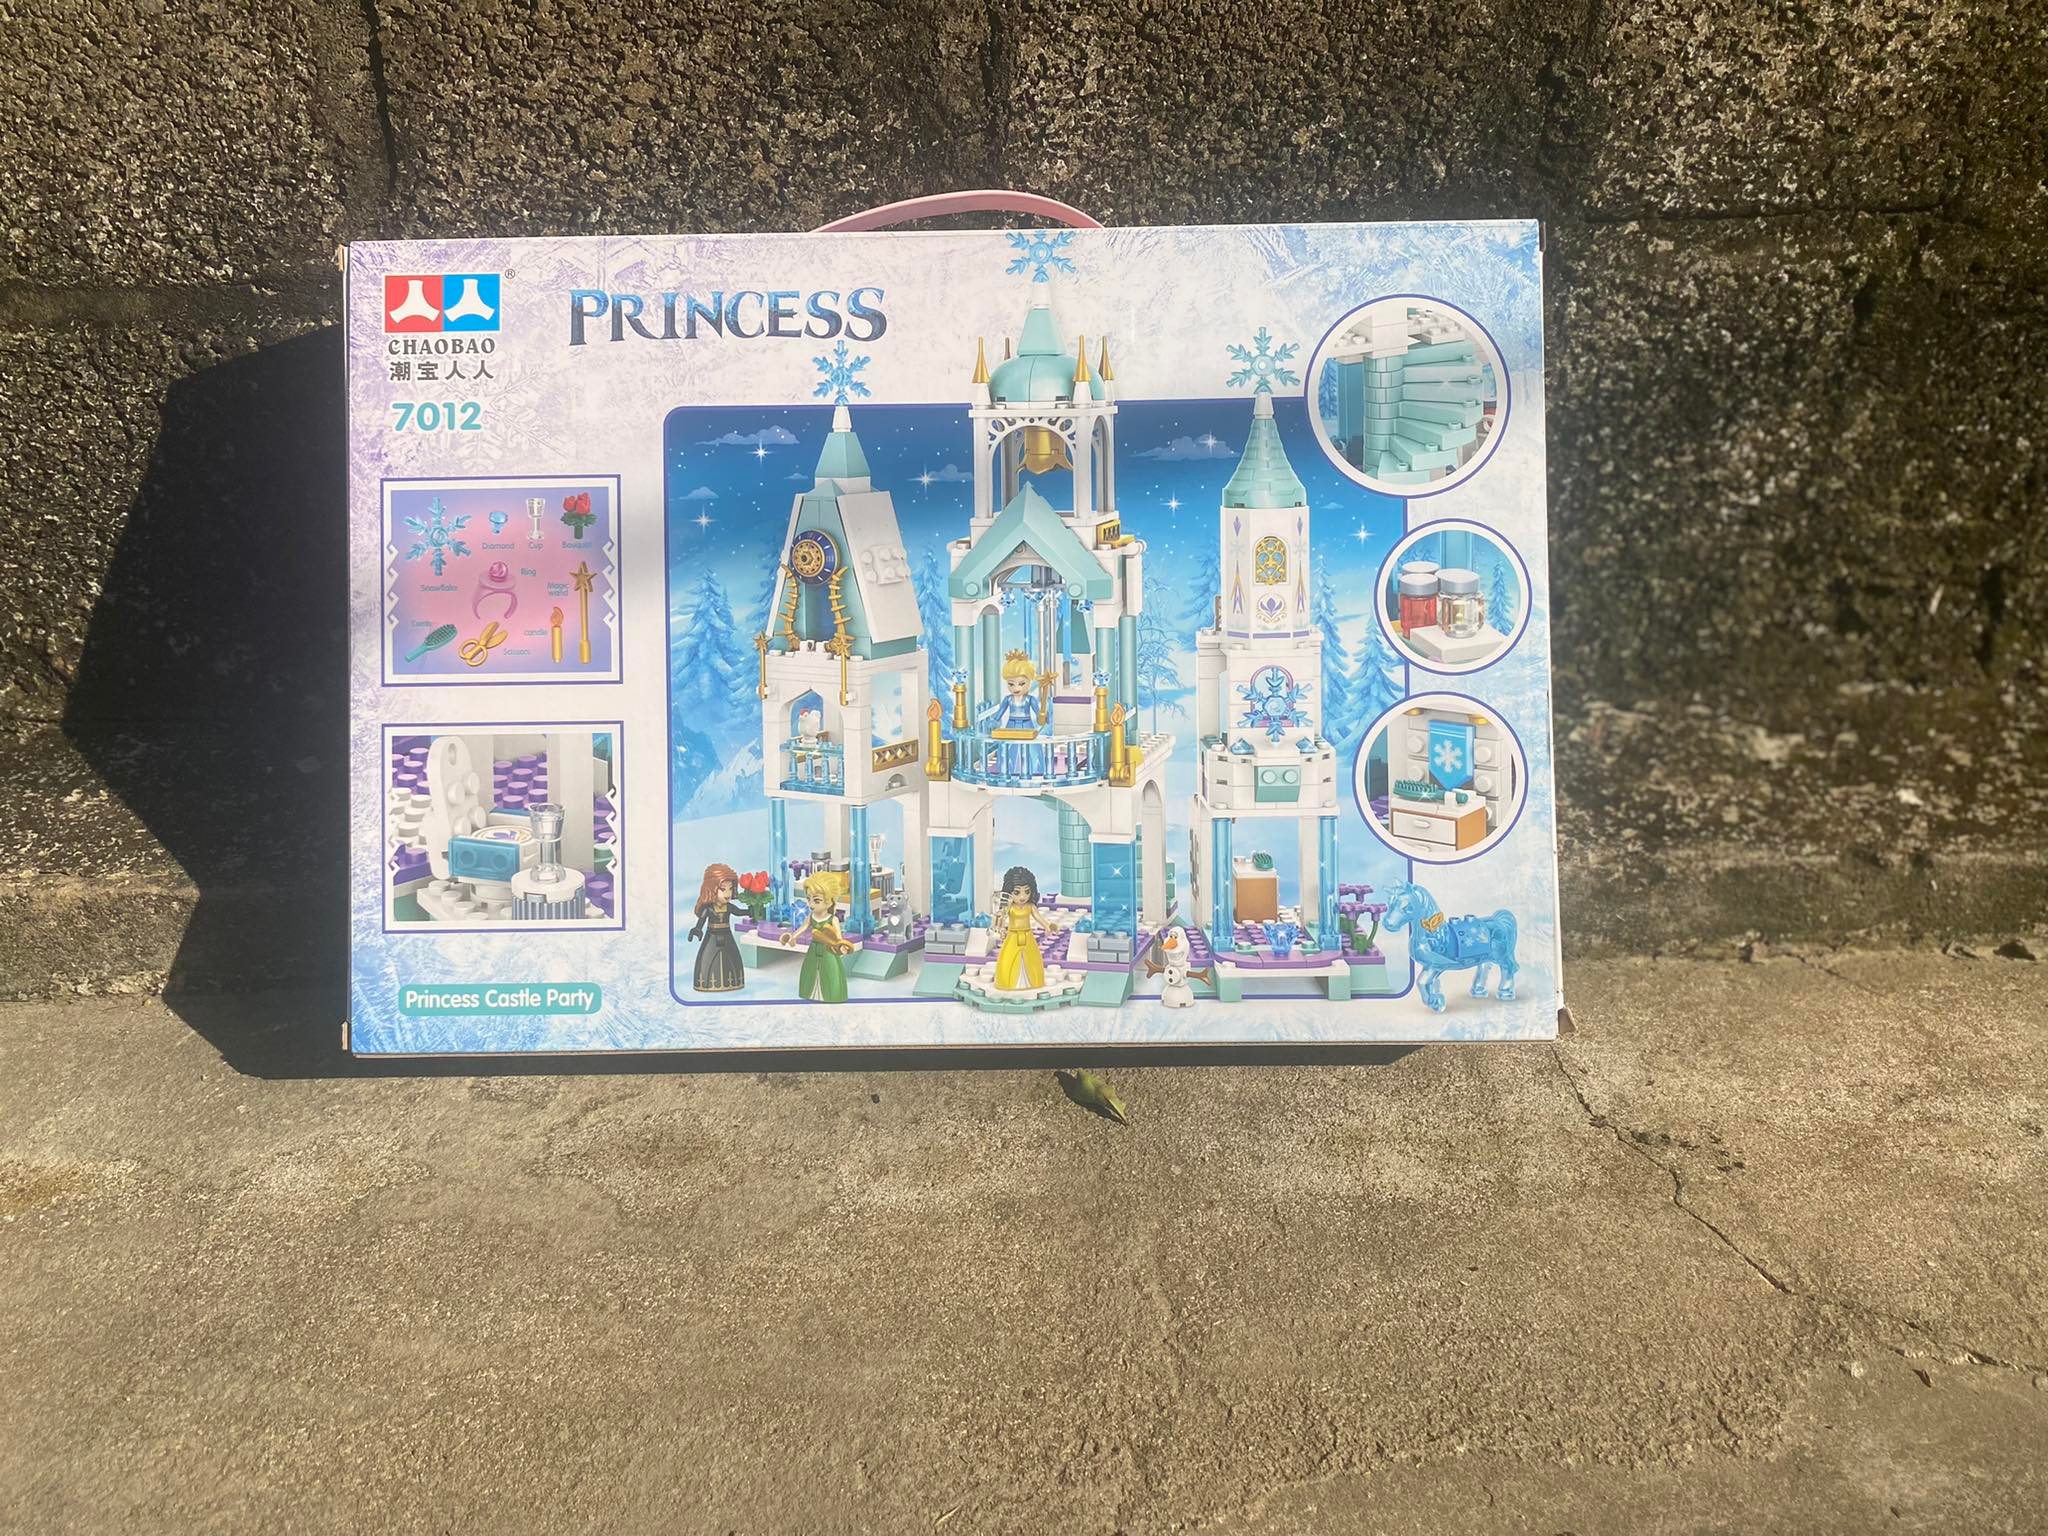 Bộ Đồ Chơi Lego con gái đồ chơi xếp hình 568 chi tiết lắp ghép lâu đài công chúa băng giá 3D